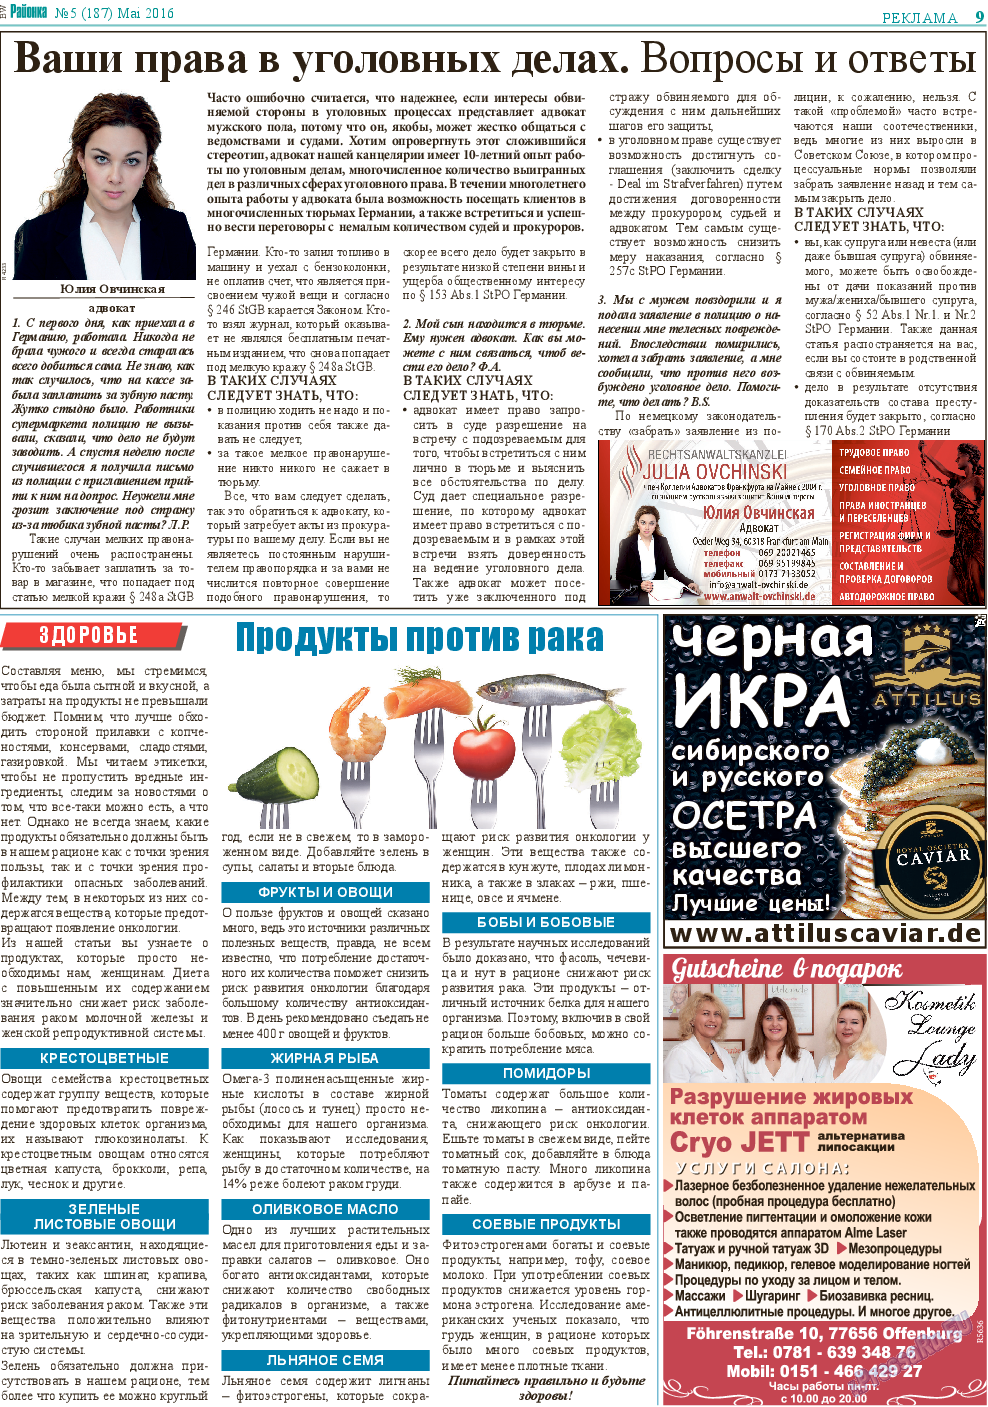 Районка-Süd-West (газета). 2016 год, номер 5, стр. 9